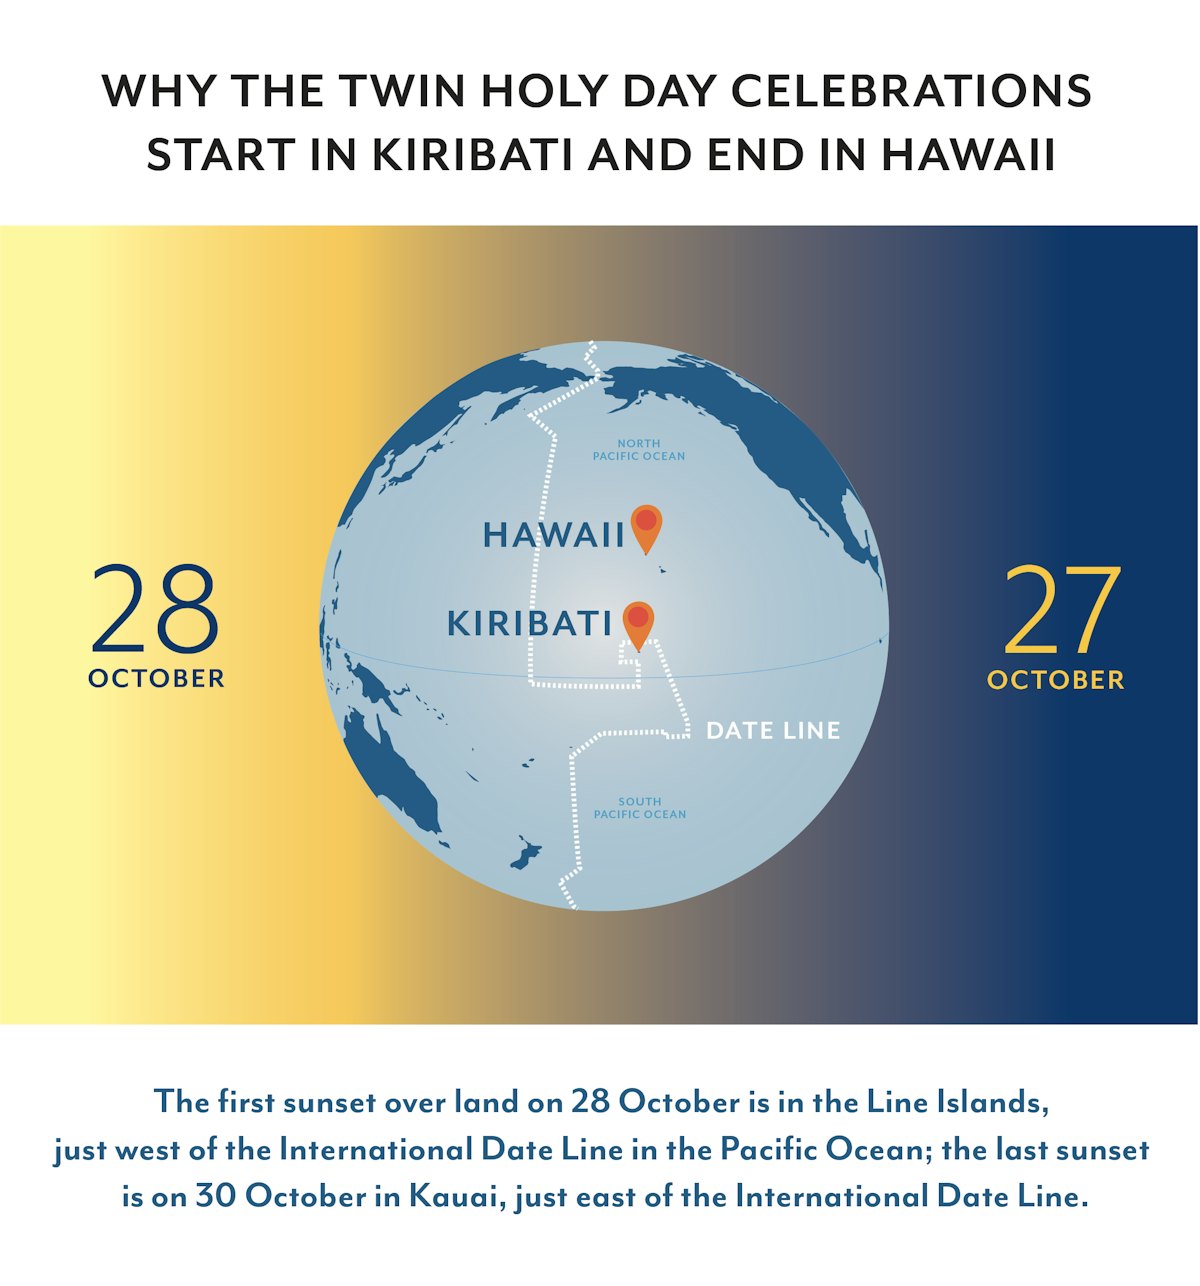 Este gráfico explica por qué las celebraciones de los Días Sagrados Gemelos comienzan en Kiribati y terminan en Hawai.